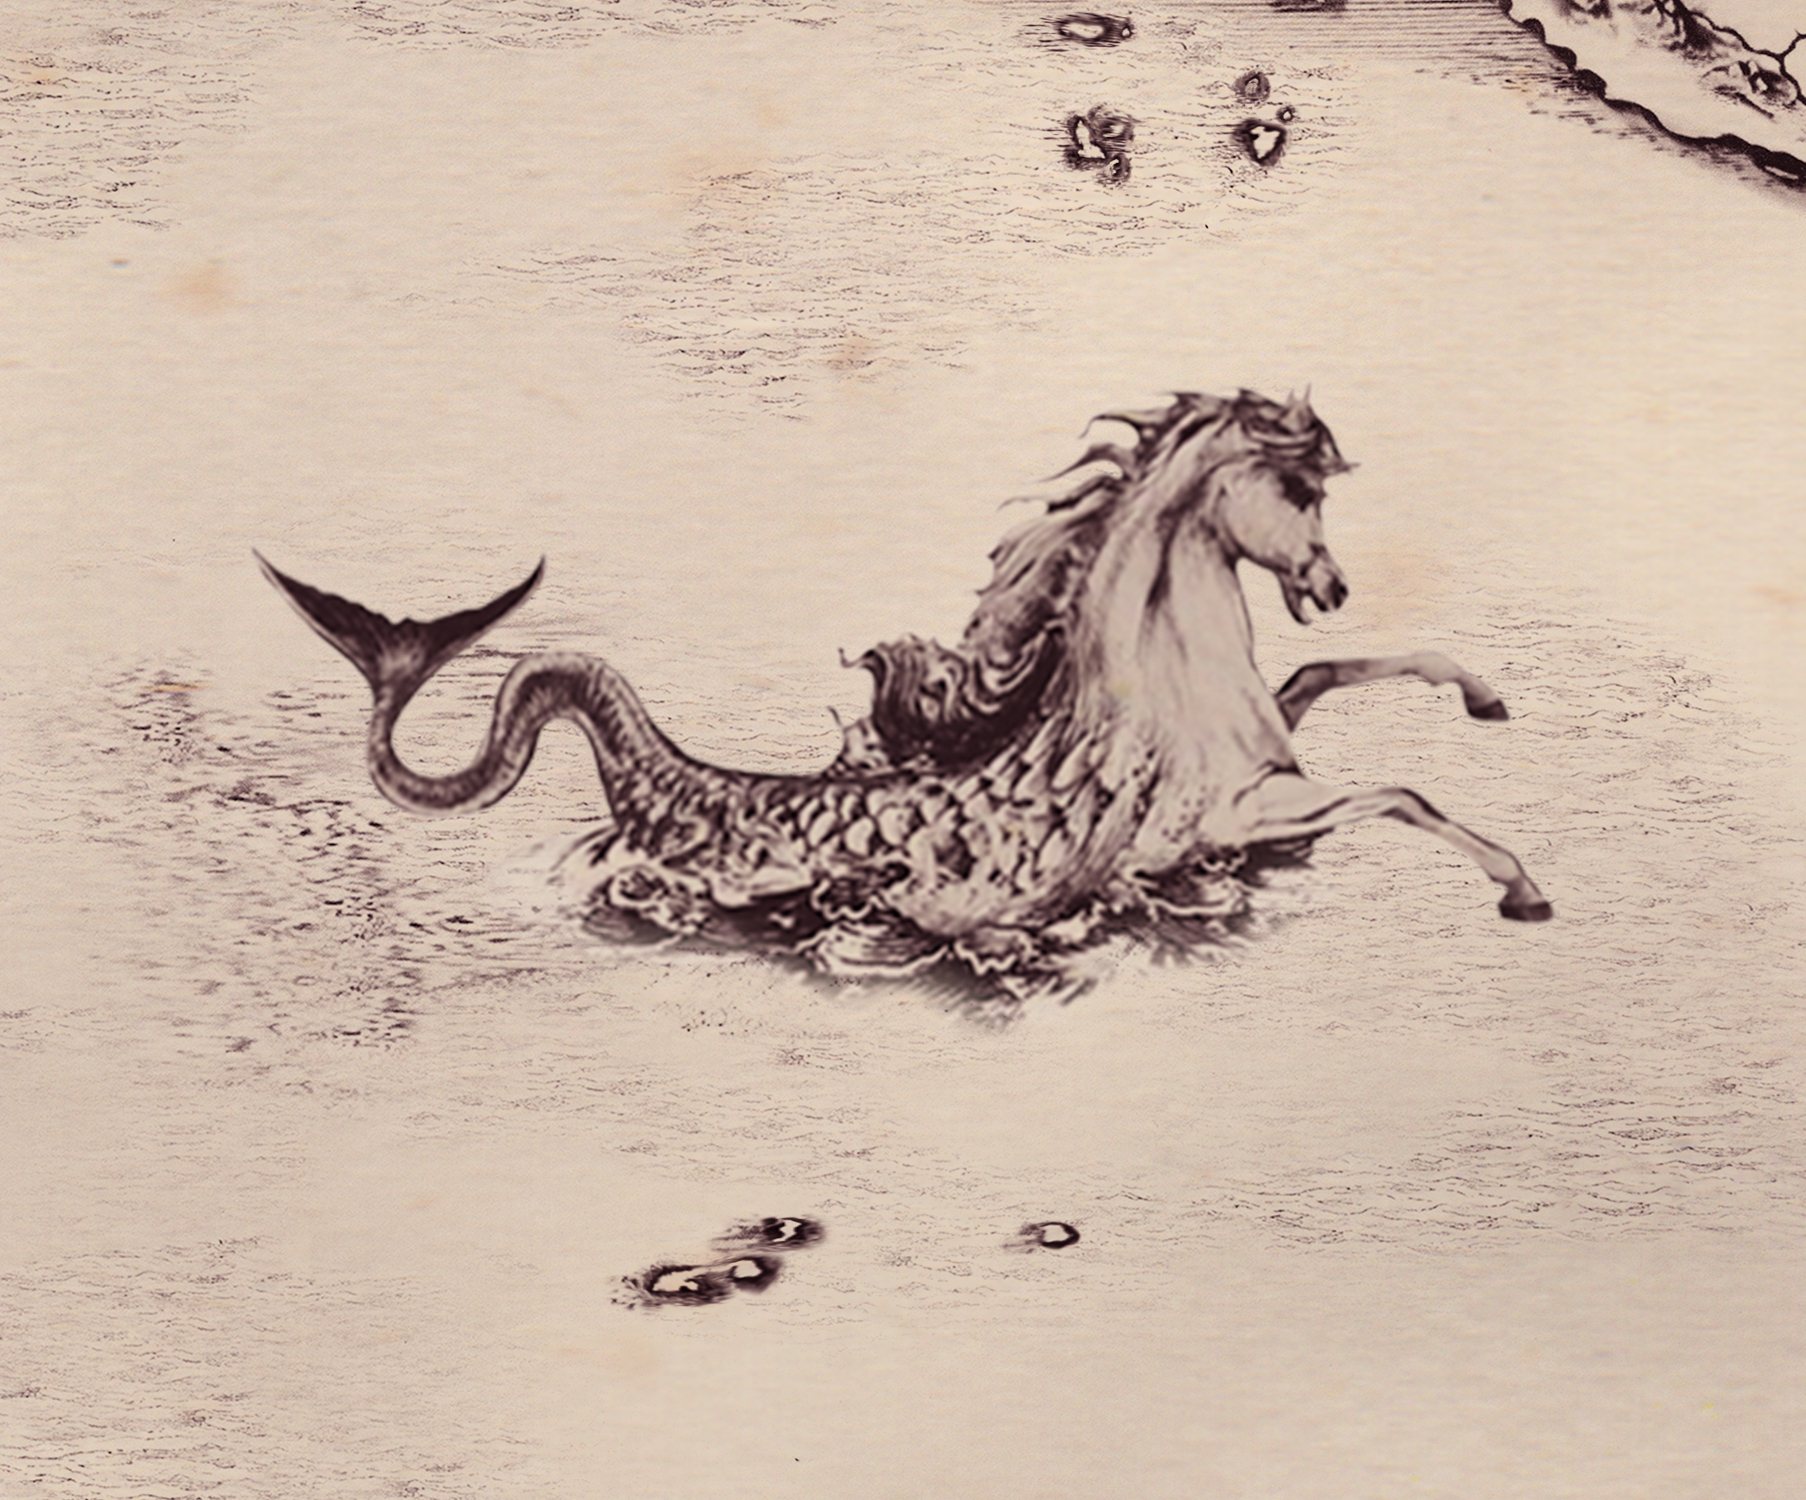 harry potter hippocampus mythology